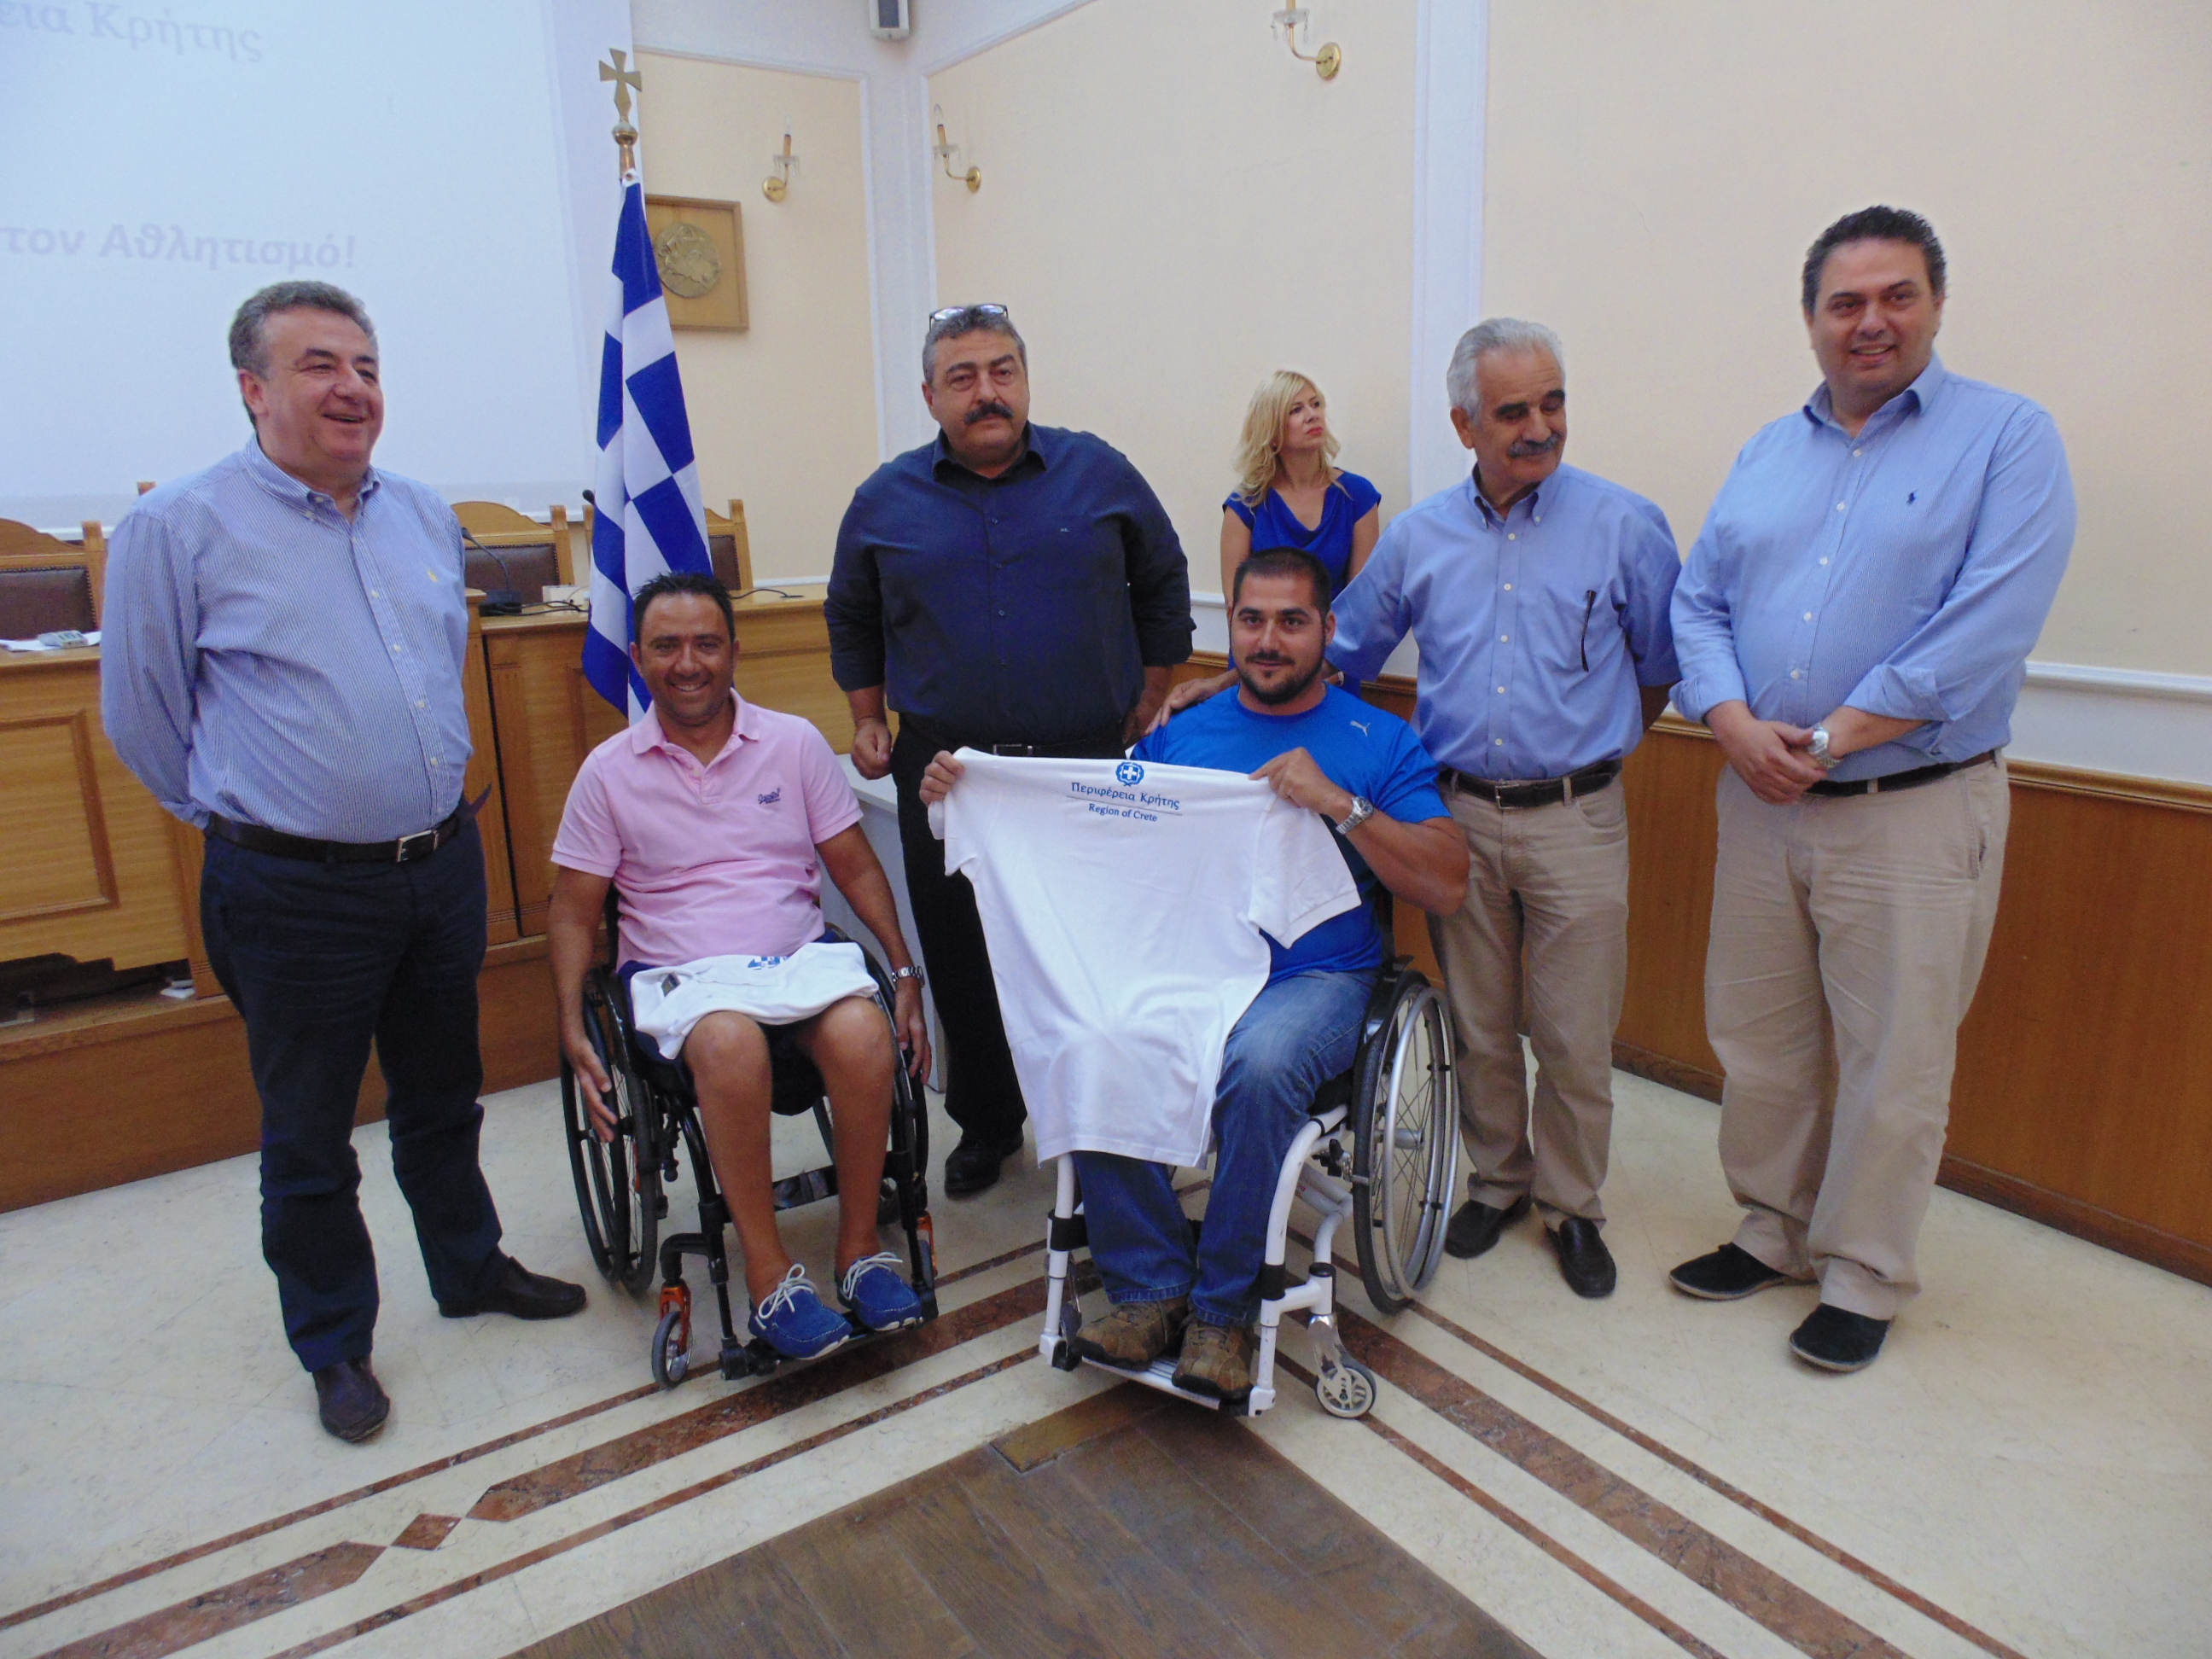 Συγχαρητήριο Περιφερειάρχη Κρήτης για τα δυο νέα χρυσά μετάλλια στο Μανόλη Στεφανουδάκη 